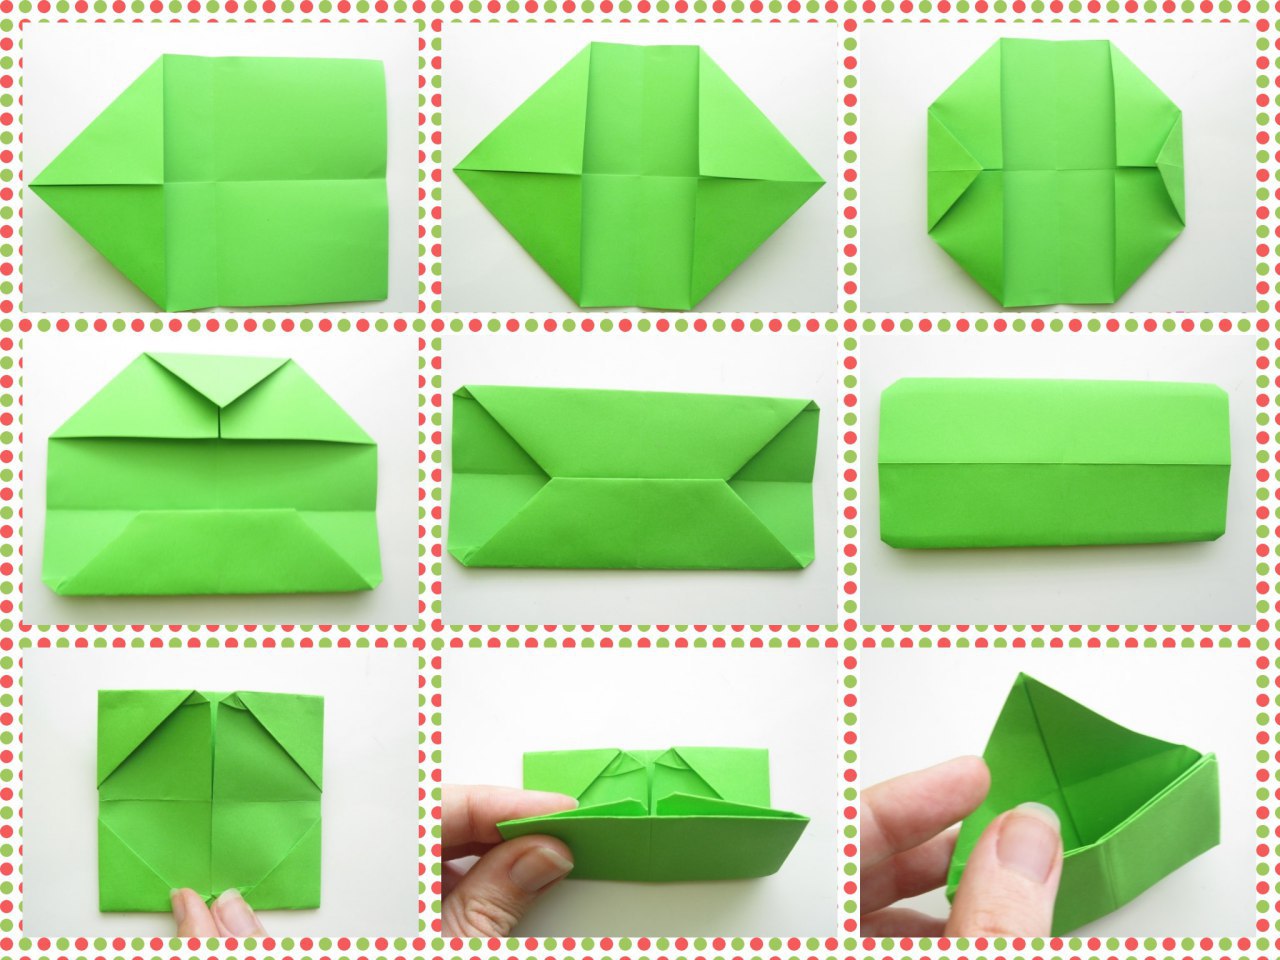 Как сделать оригами кошелек